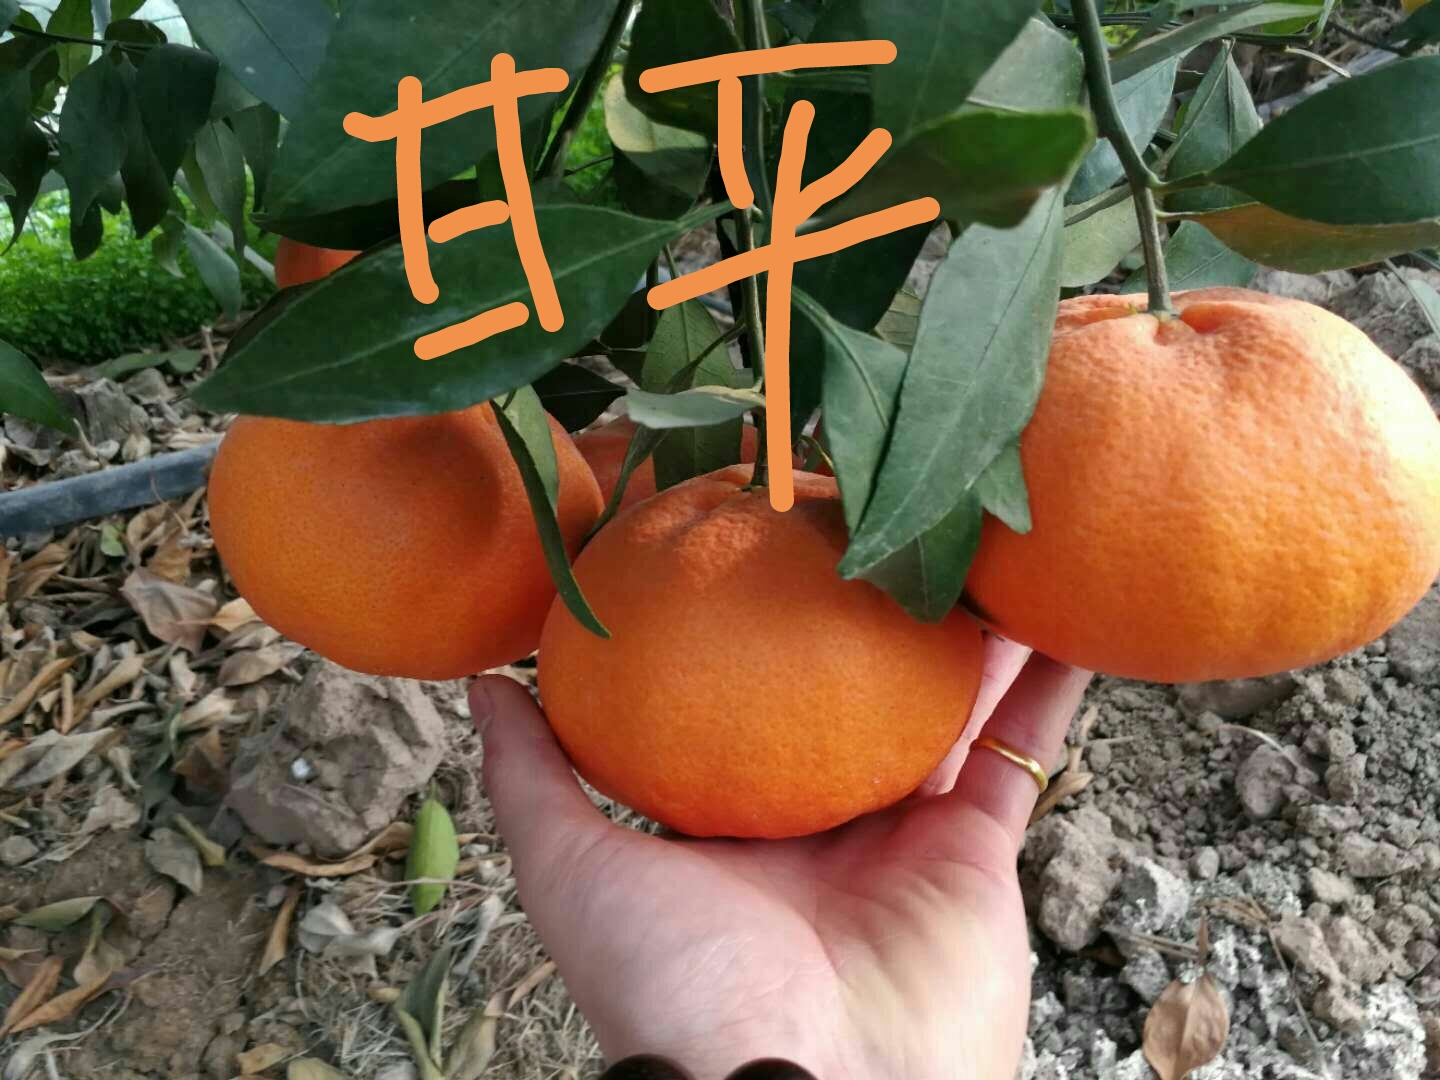 甘平柑橘苗 嫁接苗 0.5~1米